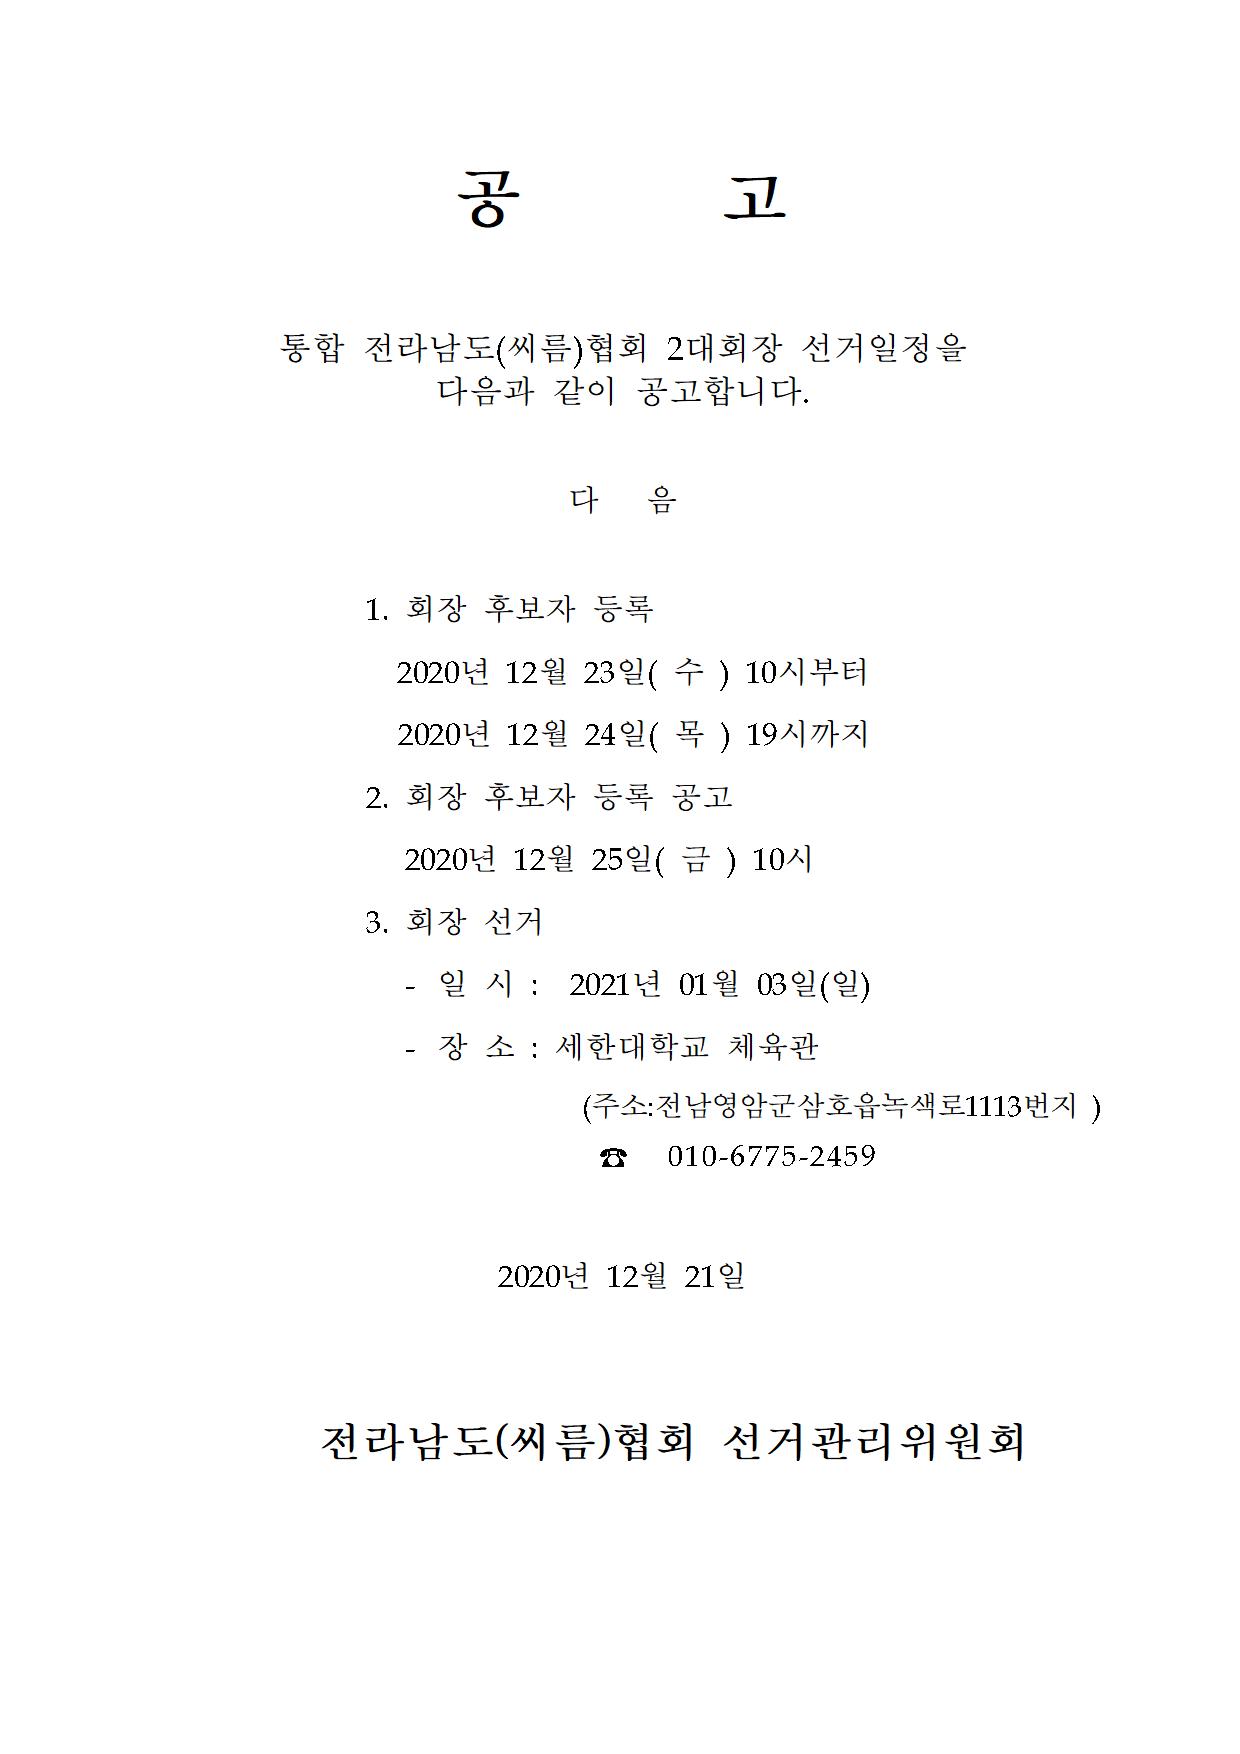 전남씨름협회 2대 회장선거 일정 공고 파일